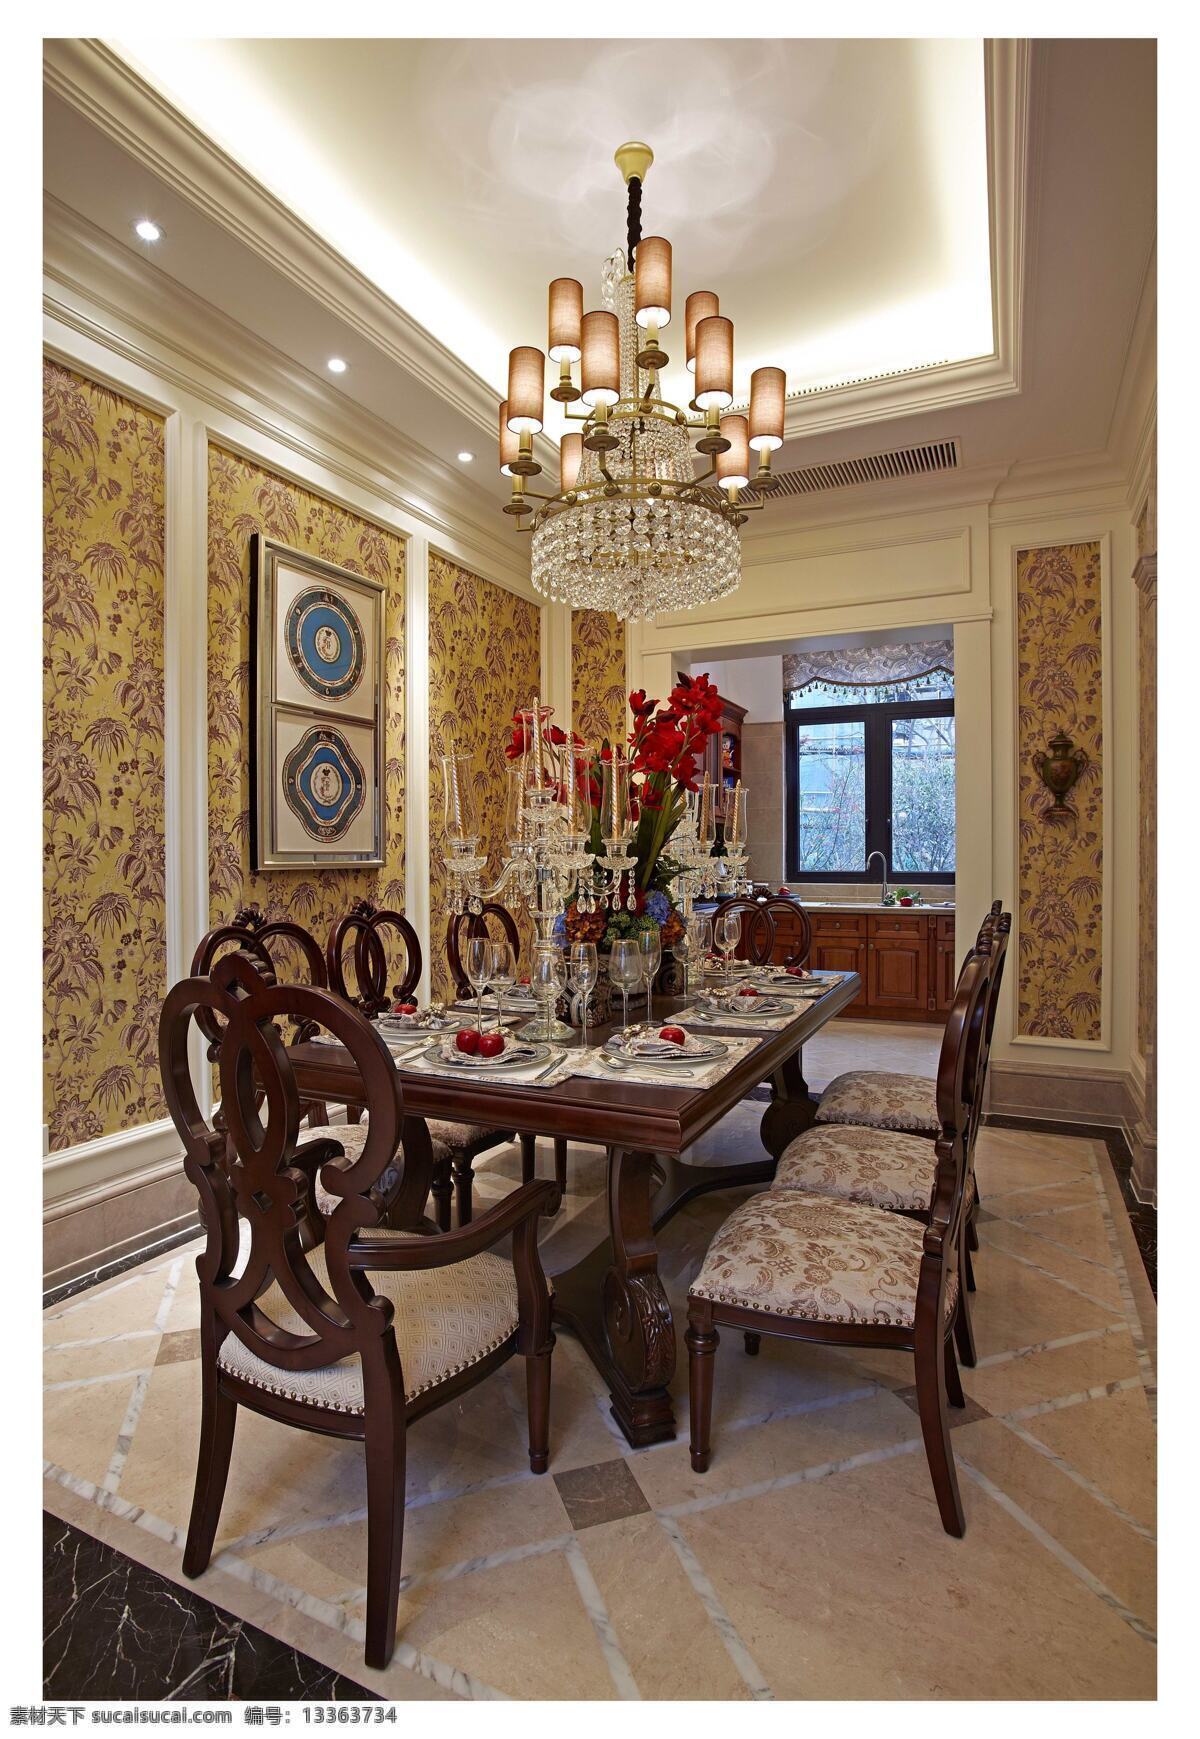 现代 轻 奢 客厅 黄色 花纹 背景 墙 室内装修 效果图 客厅装修 木制桌子 水晶灯 瓷砖地板